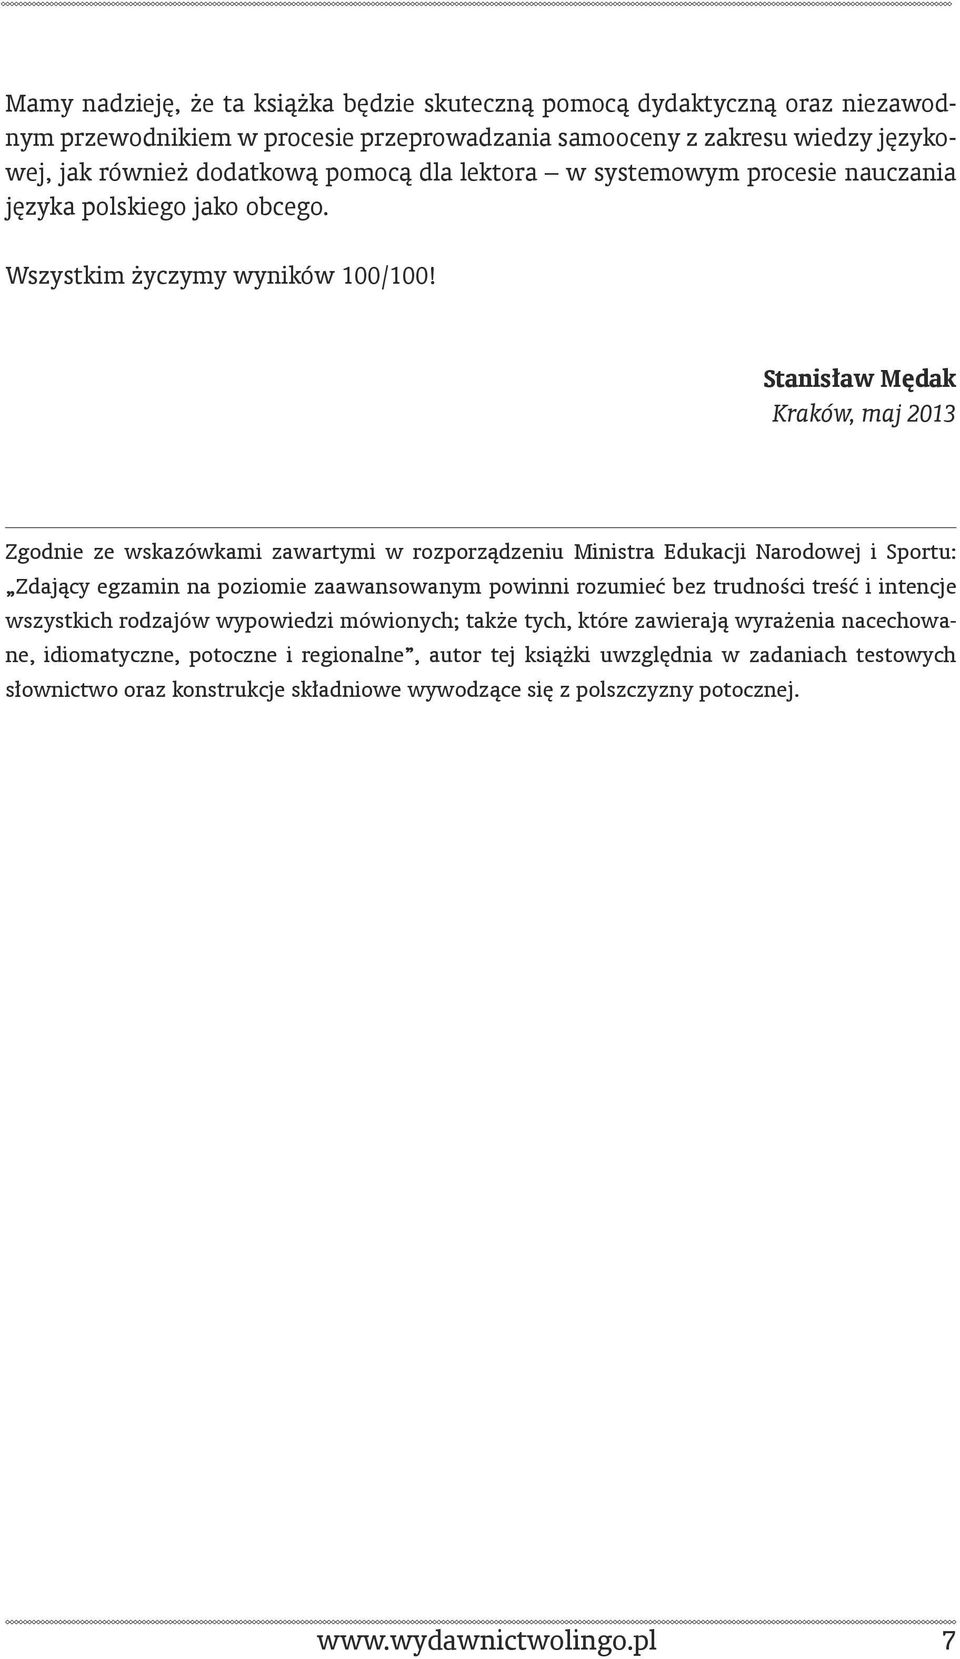 Stanisław Mędak Kraków, maj 2013 Zgodnie ze wskazówkami zawartymi w rozporządzeniu Ministra Edukacji Narodowej i Sportu: Zdający egzamin na poziomie zaawansowanym powinni rozumieć bez trudności